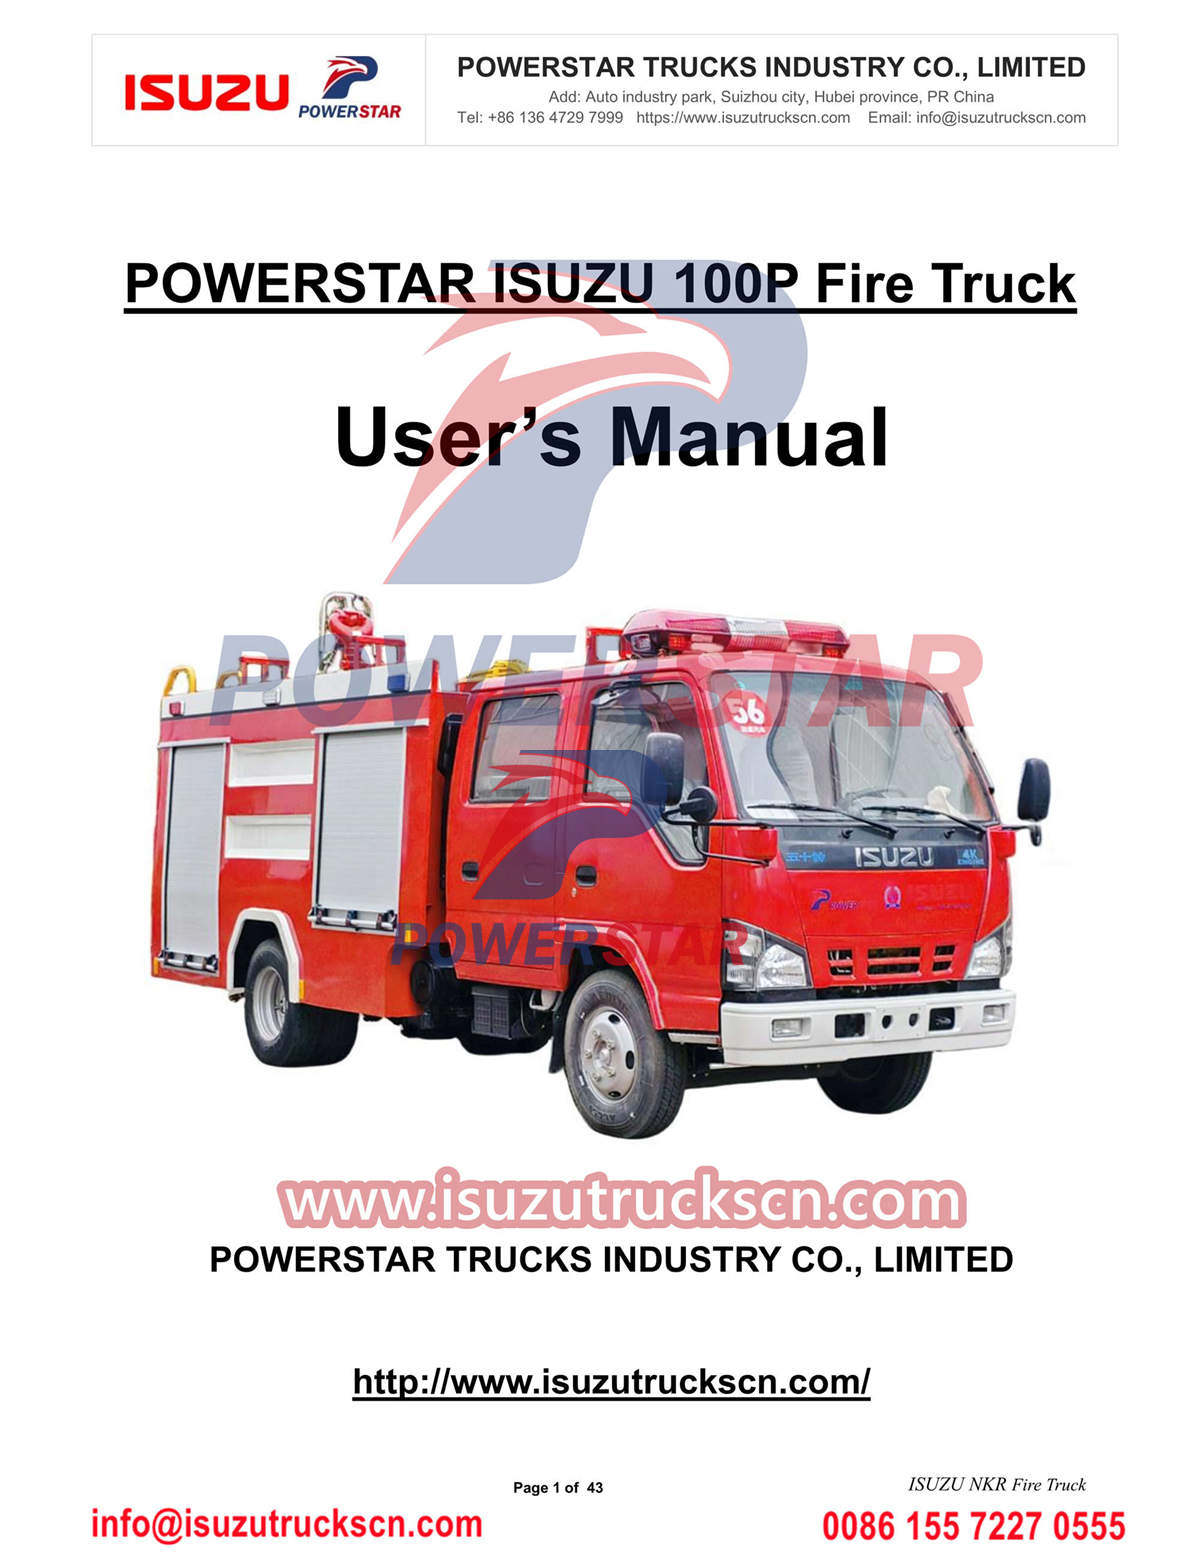 ISUZU 600P Fire Truck Manual for Cambodia